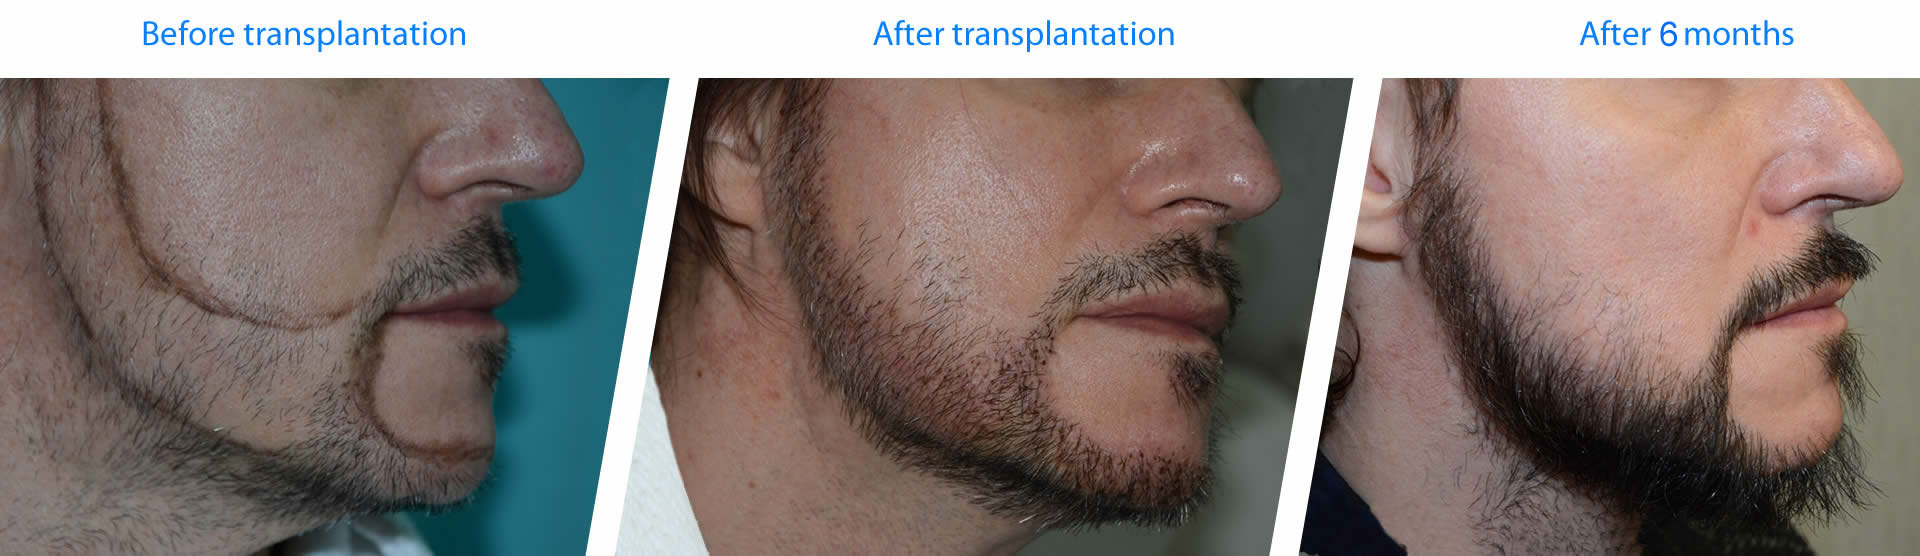 esempi e risultati di trapianto di barba